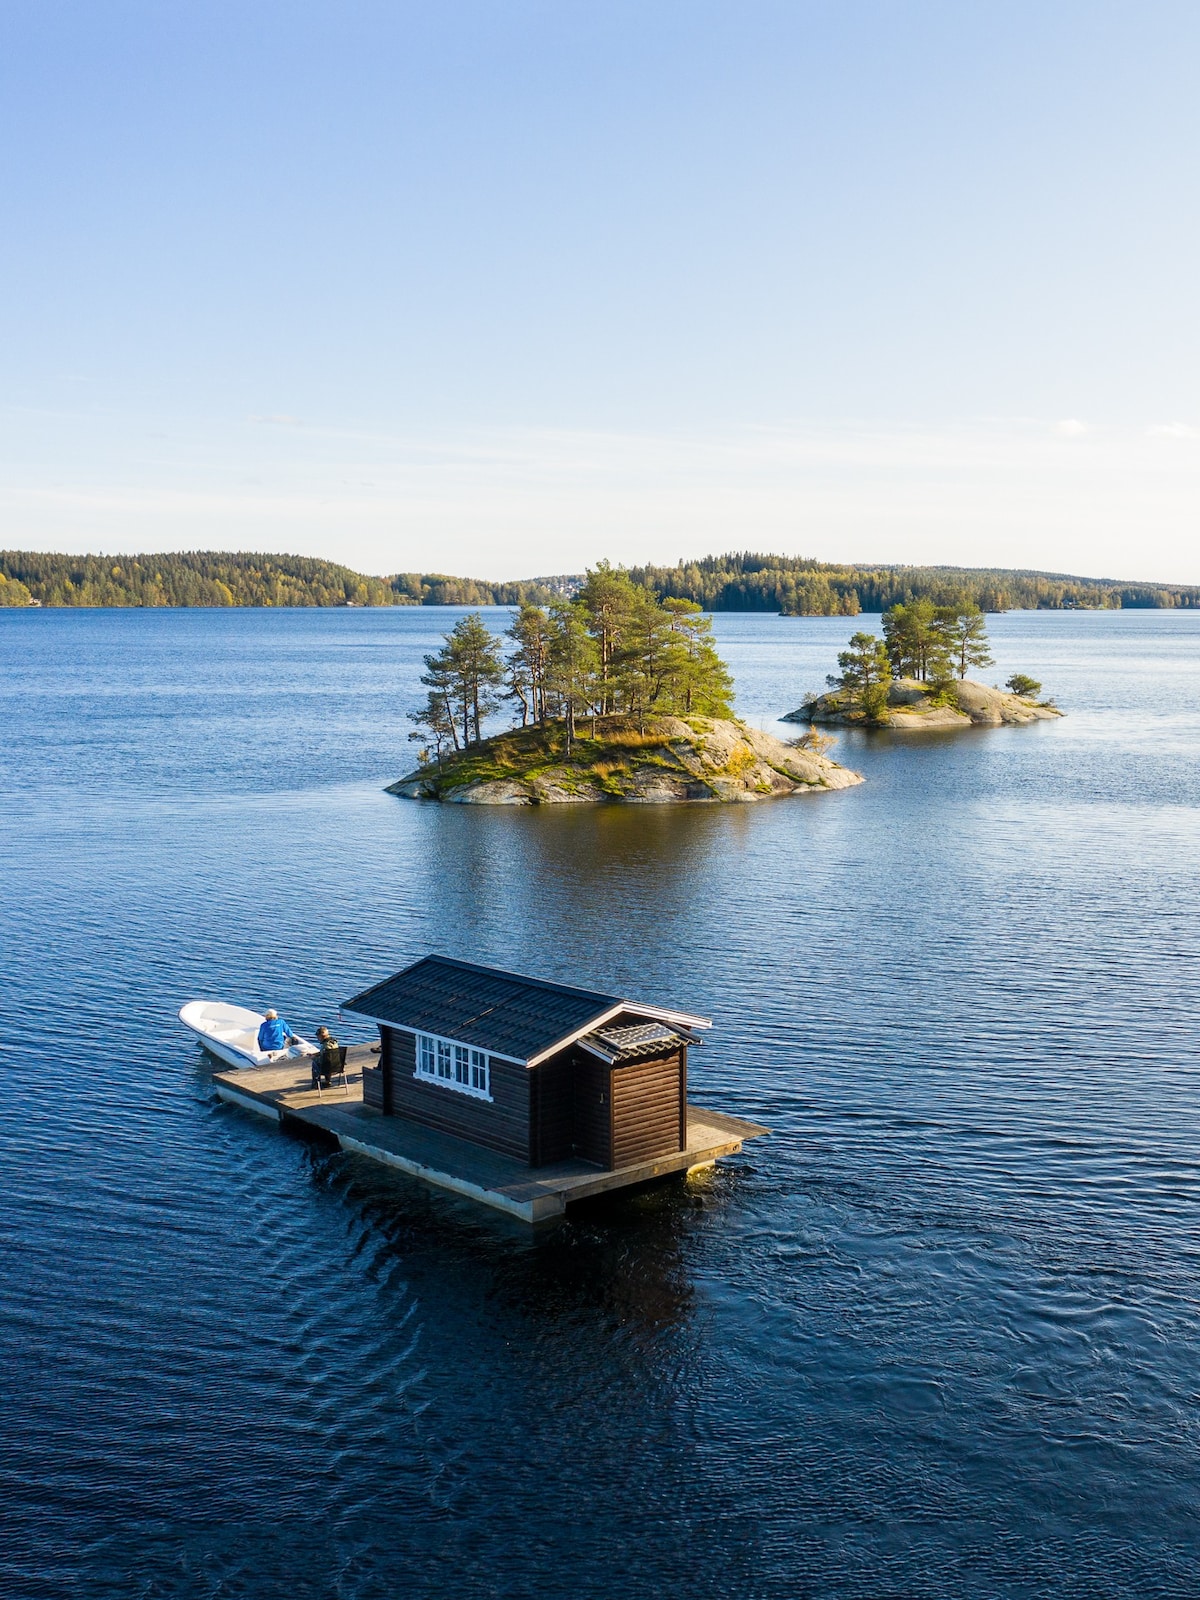 在我们的水上小屋# 3探索瑞典自然风光